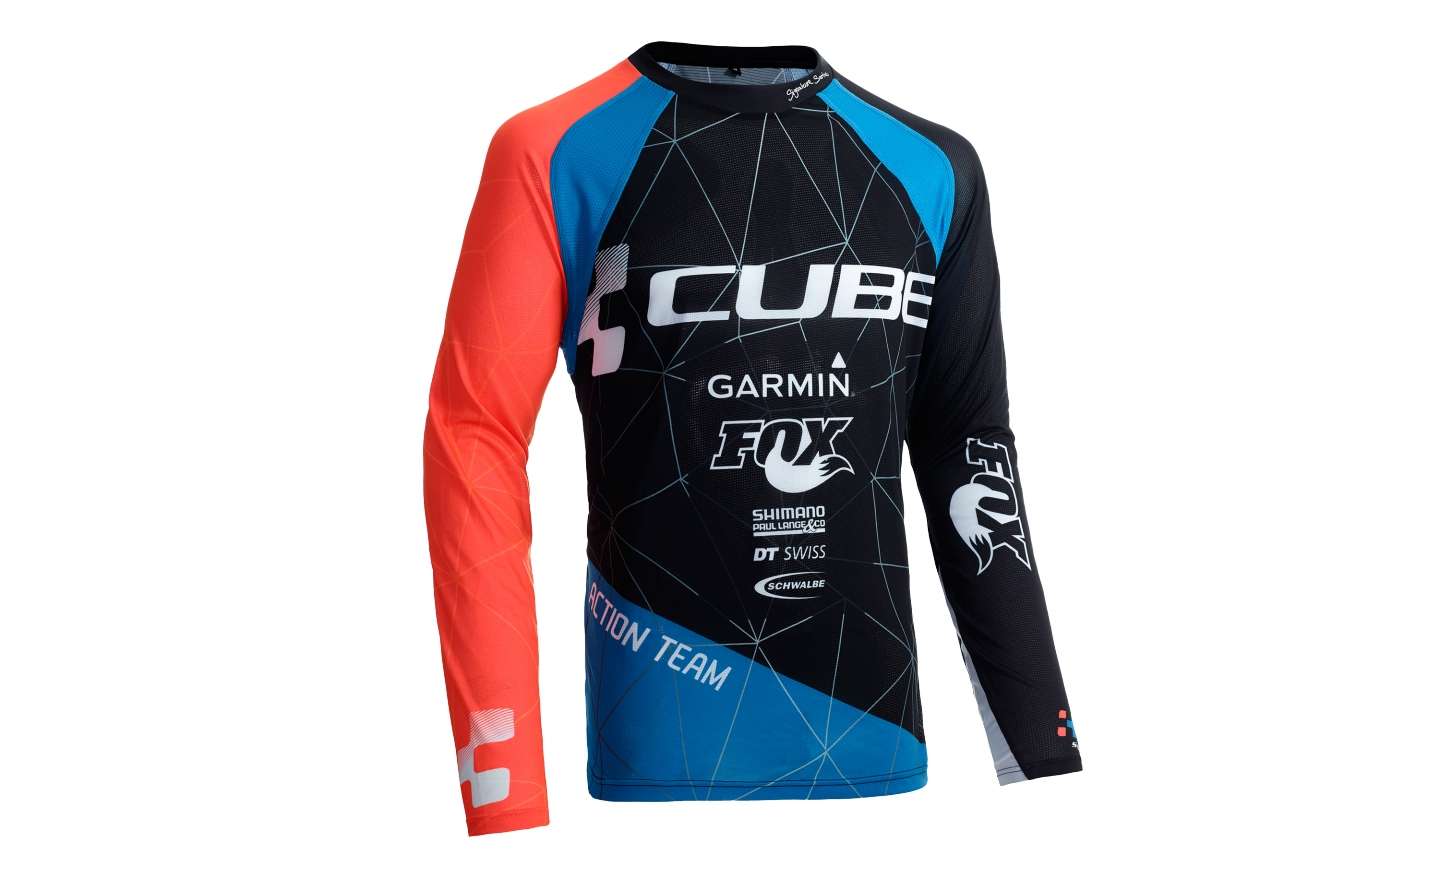 De schuld geven graan Maak leven Cube Action Team Signature Downhill Fietsshirt Lange Mouw Zwart/Blauw/Rood  koop je bij Futurumshop.nl